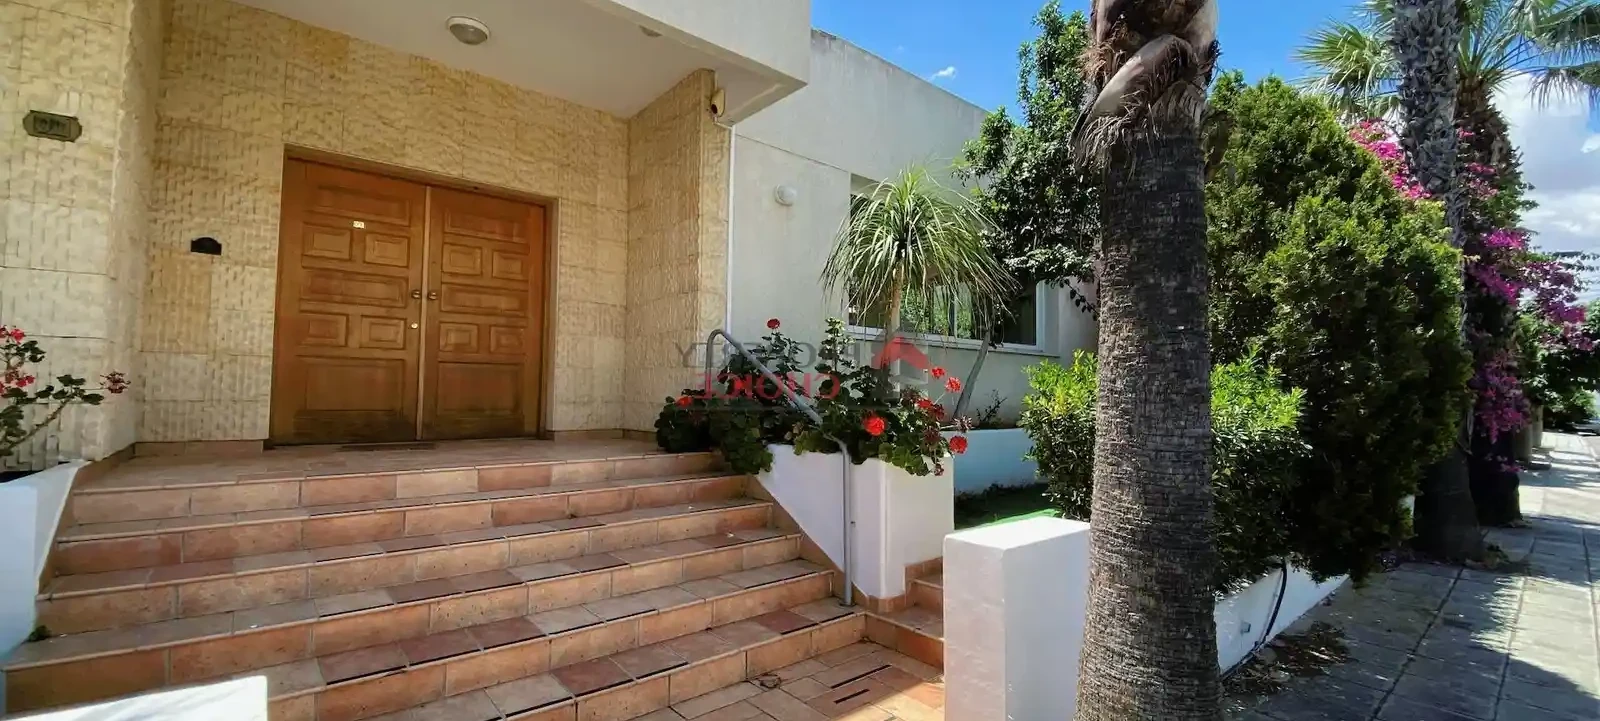 4-bedroom villa to rent €2.000, image 1